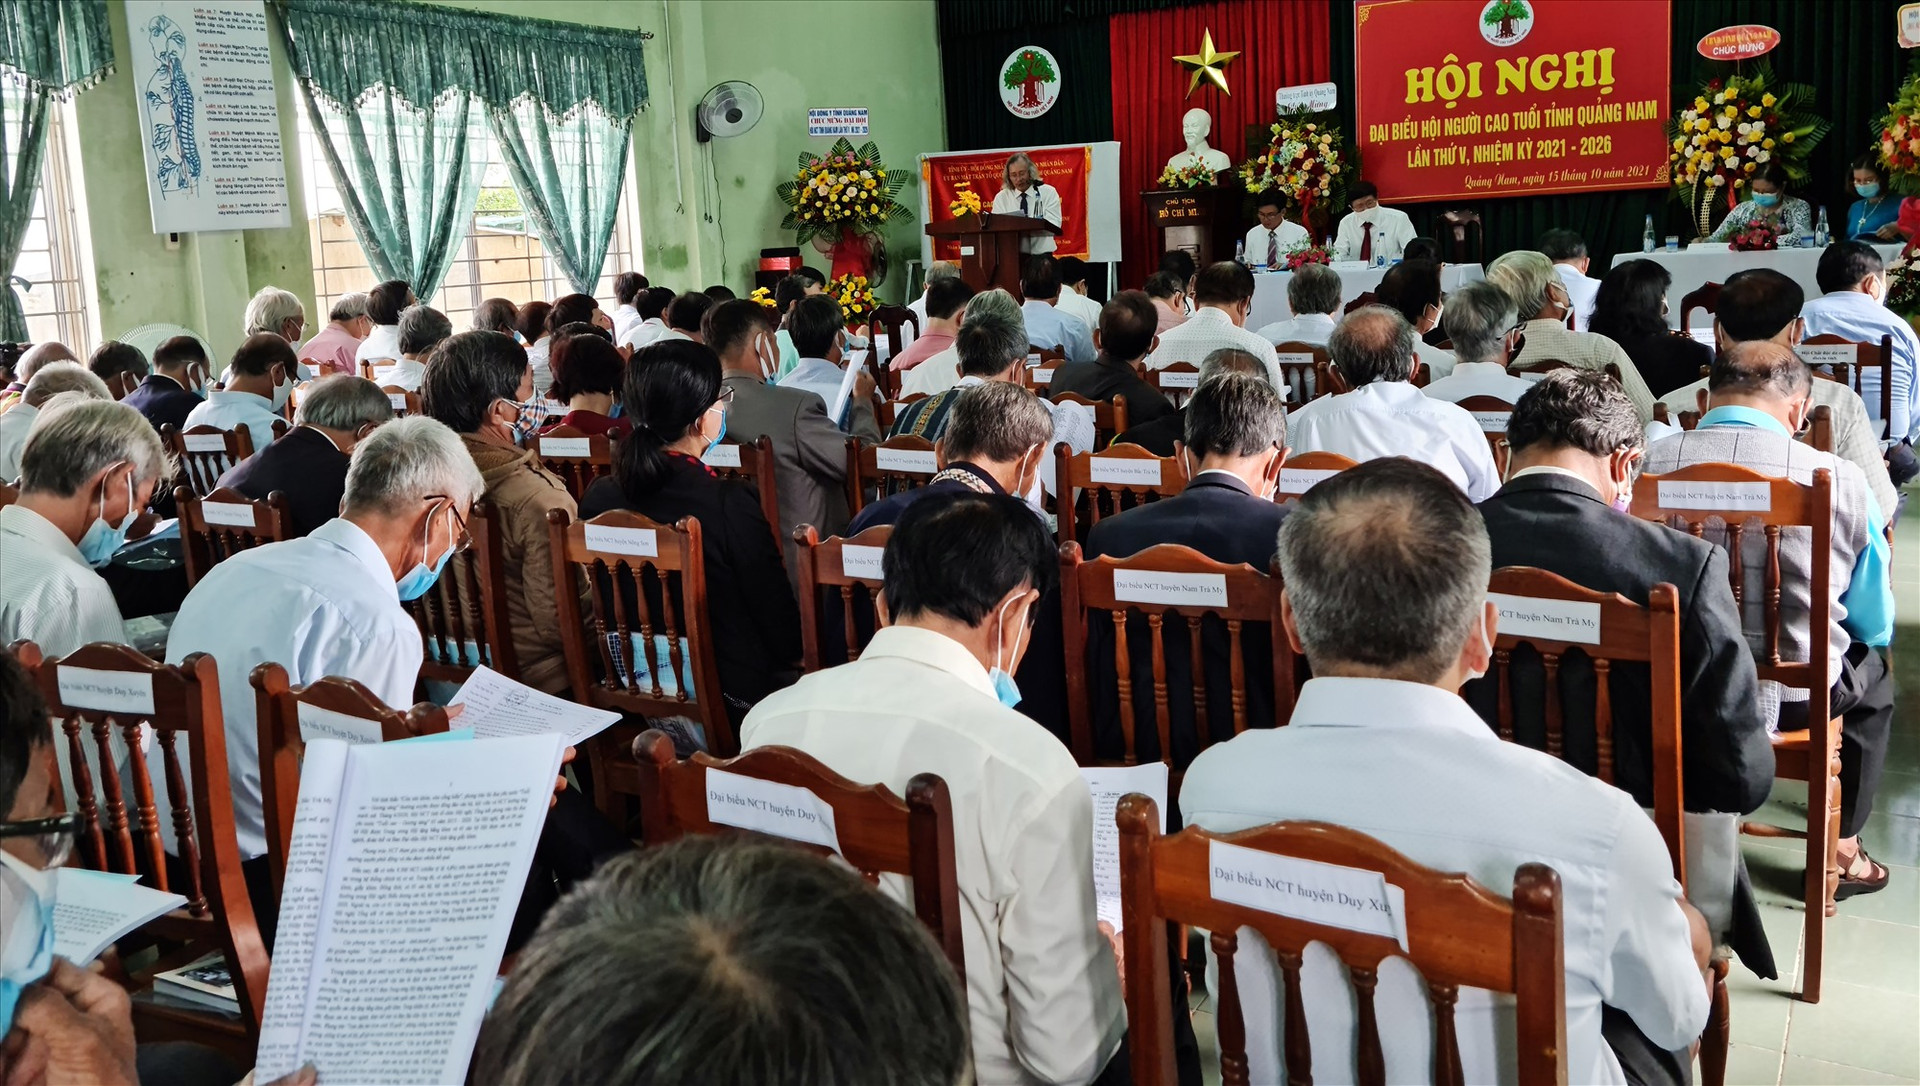 Người cao tuổi ở Quảng Nam được tạo điều kiện thường xuyên tham gia các đợt sinh hoạt chính trị, các hoạt động thường kỳ. Ảnh: H.L